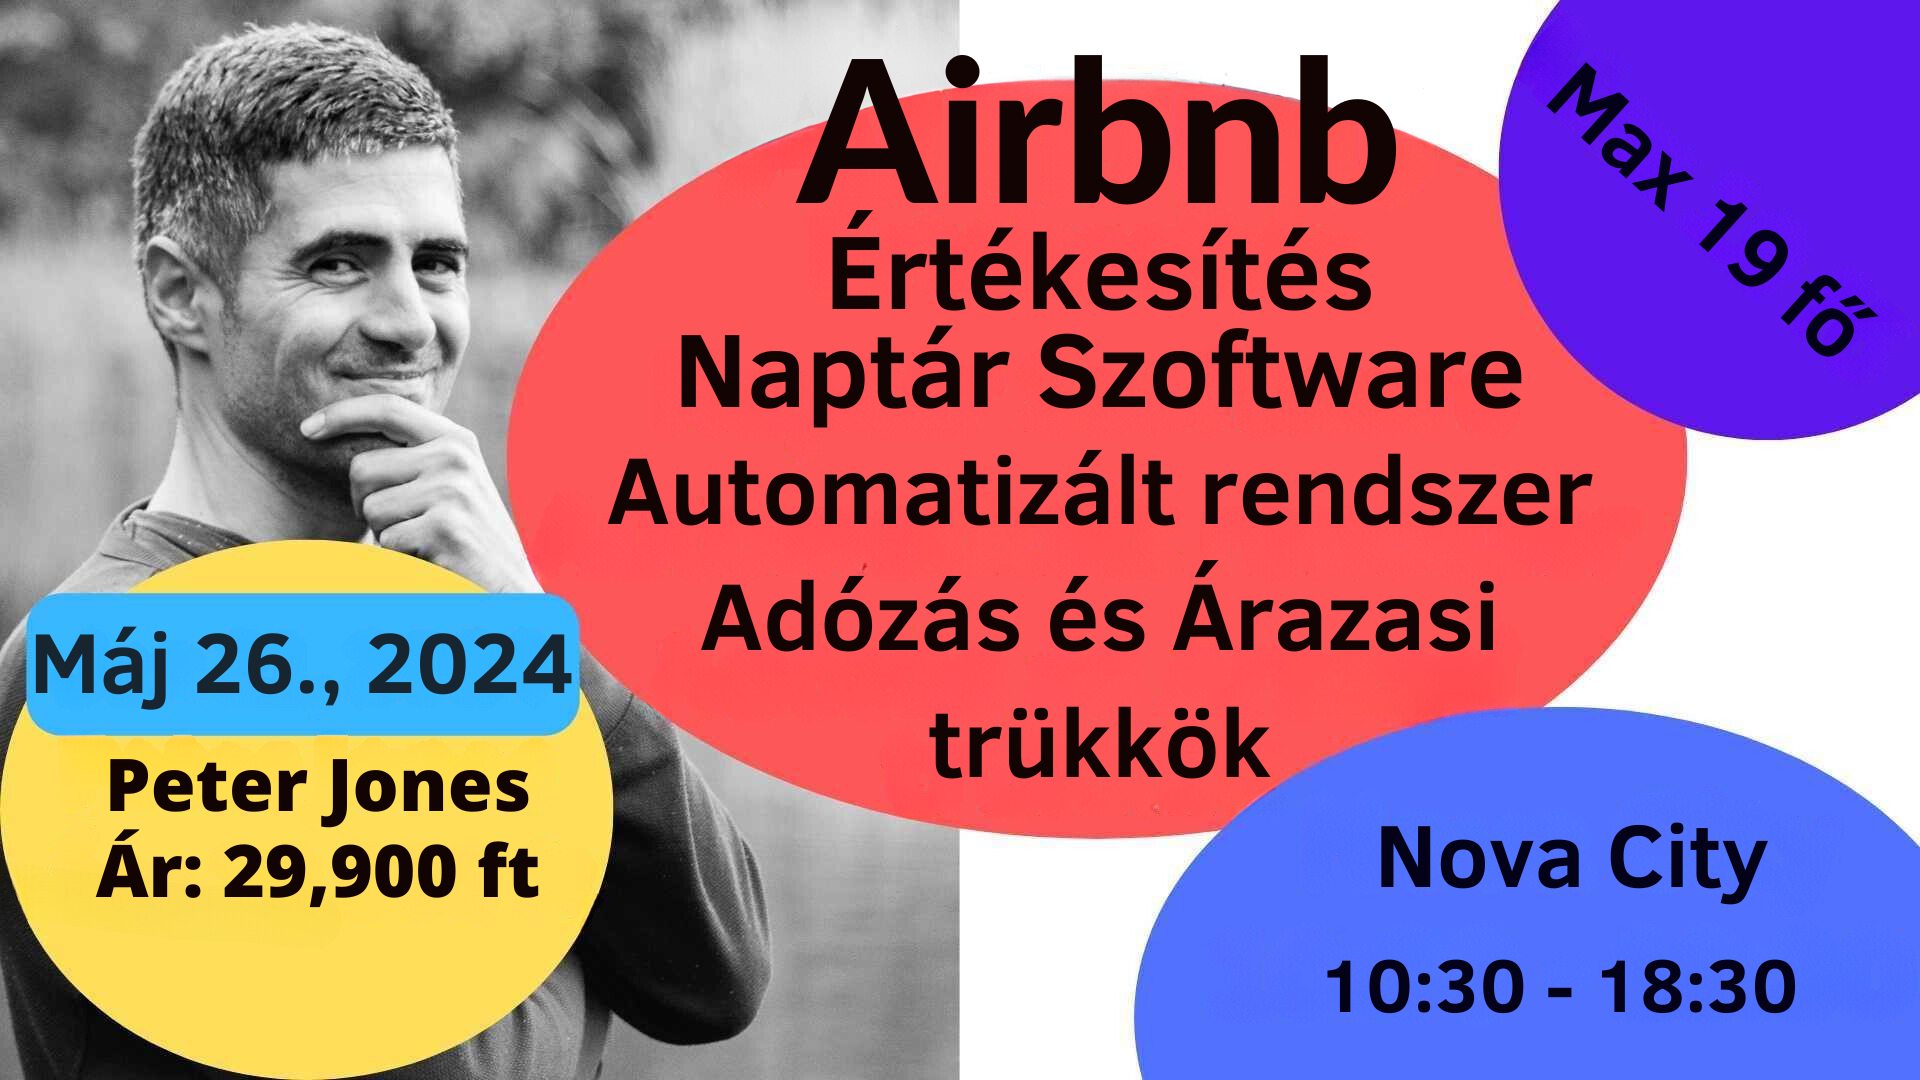 Airbnb alap tanfolyam - Adózás, árazás egy komplett üzlet bemutatása